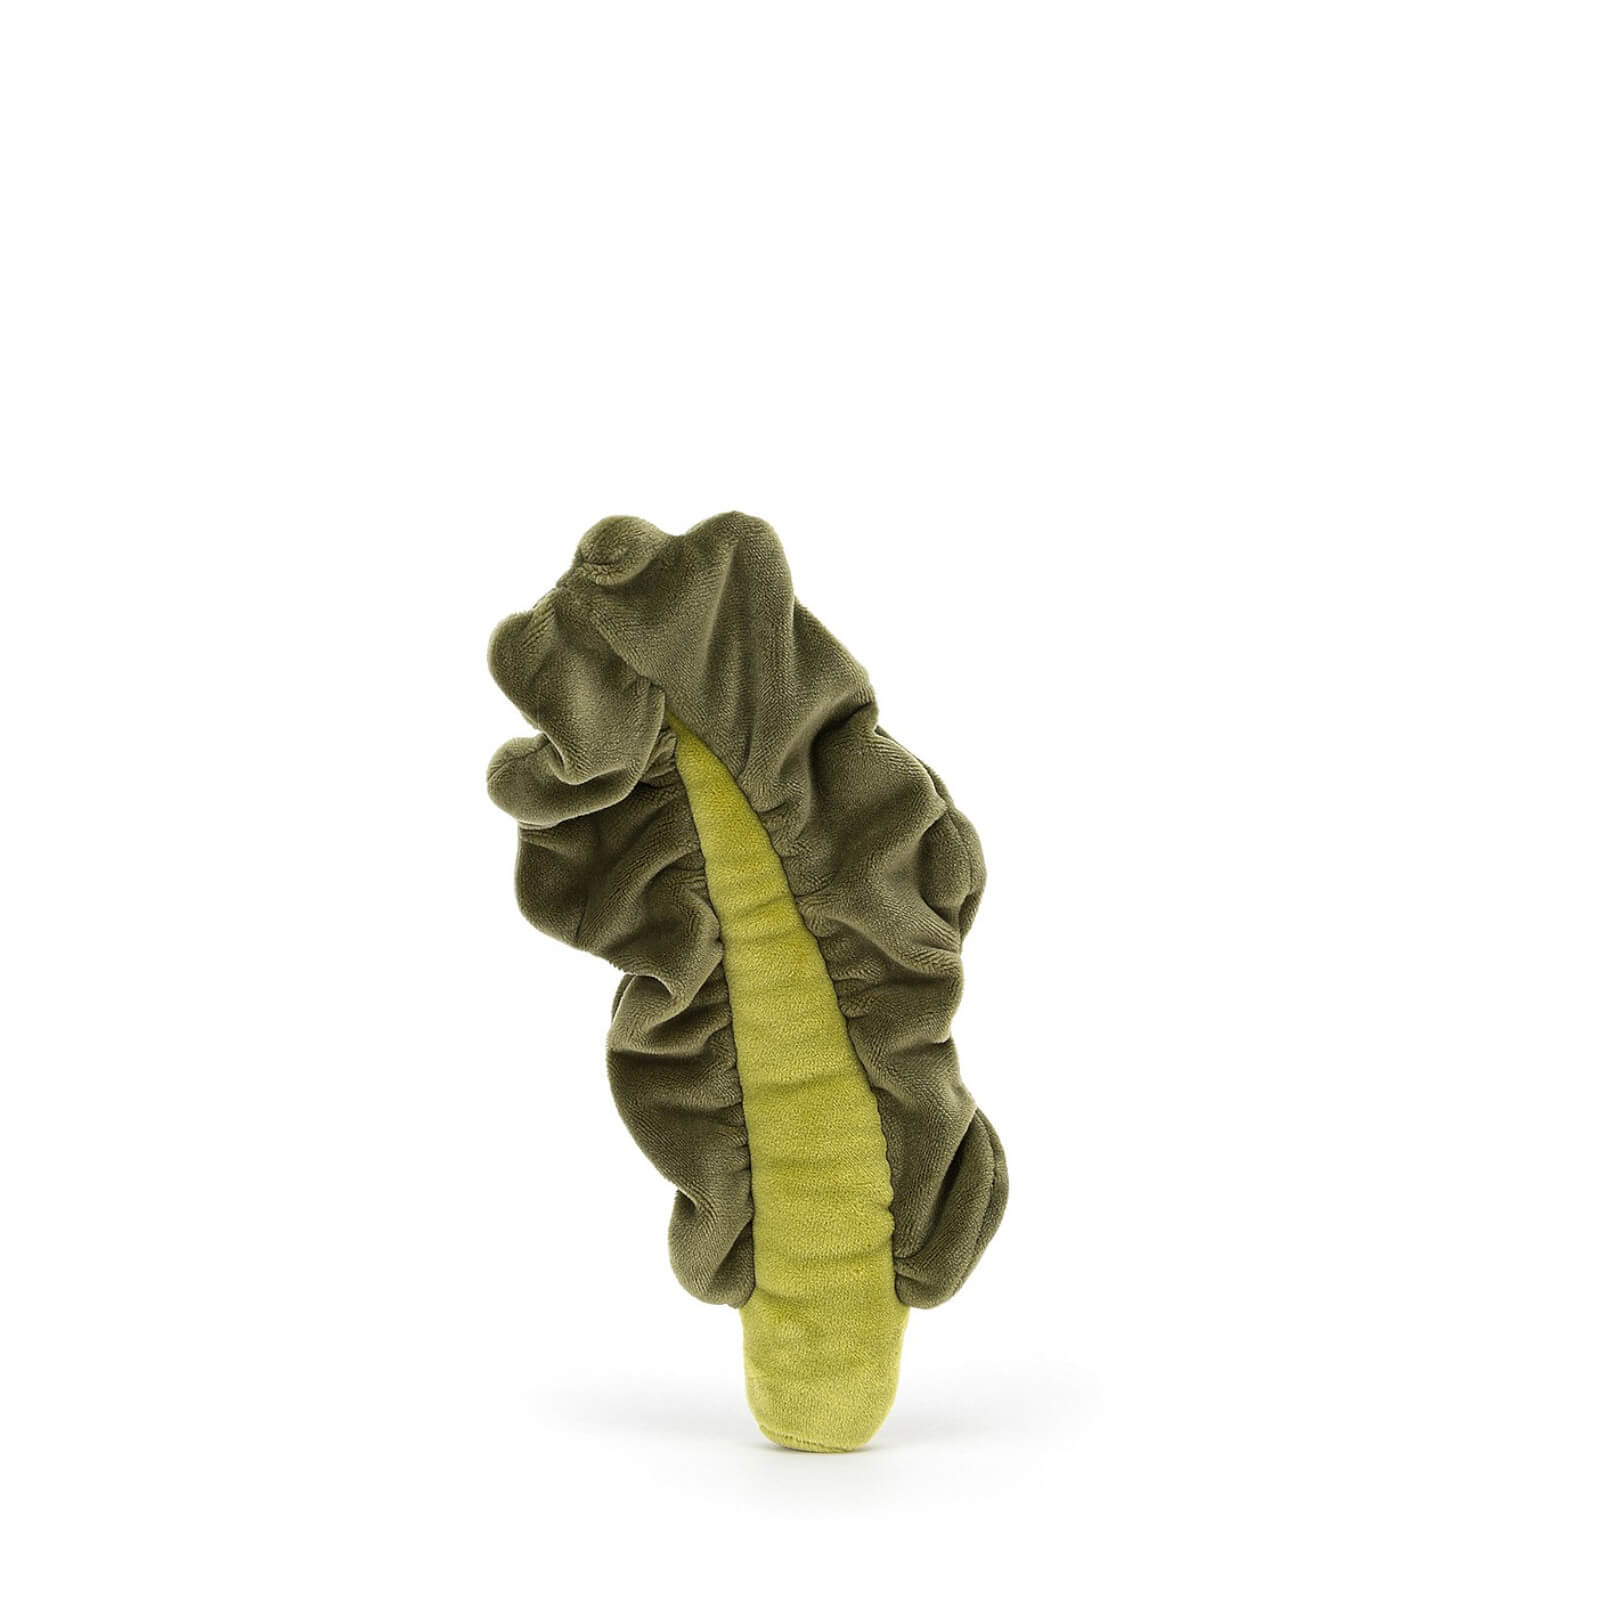 Vivacious Vegetable - Kale Leaf